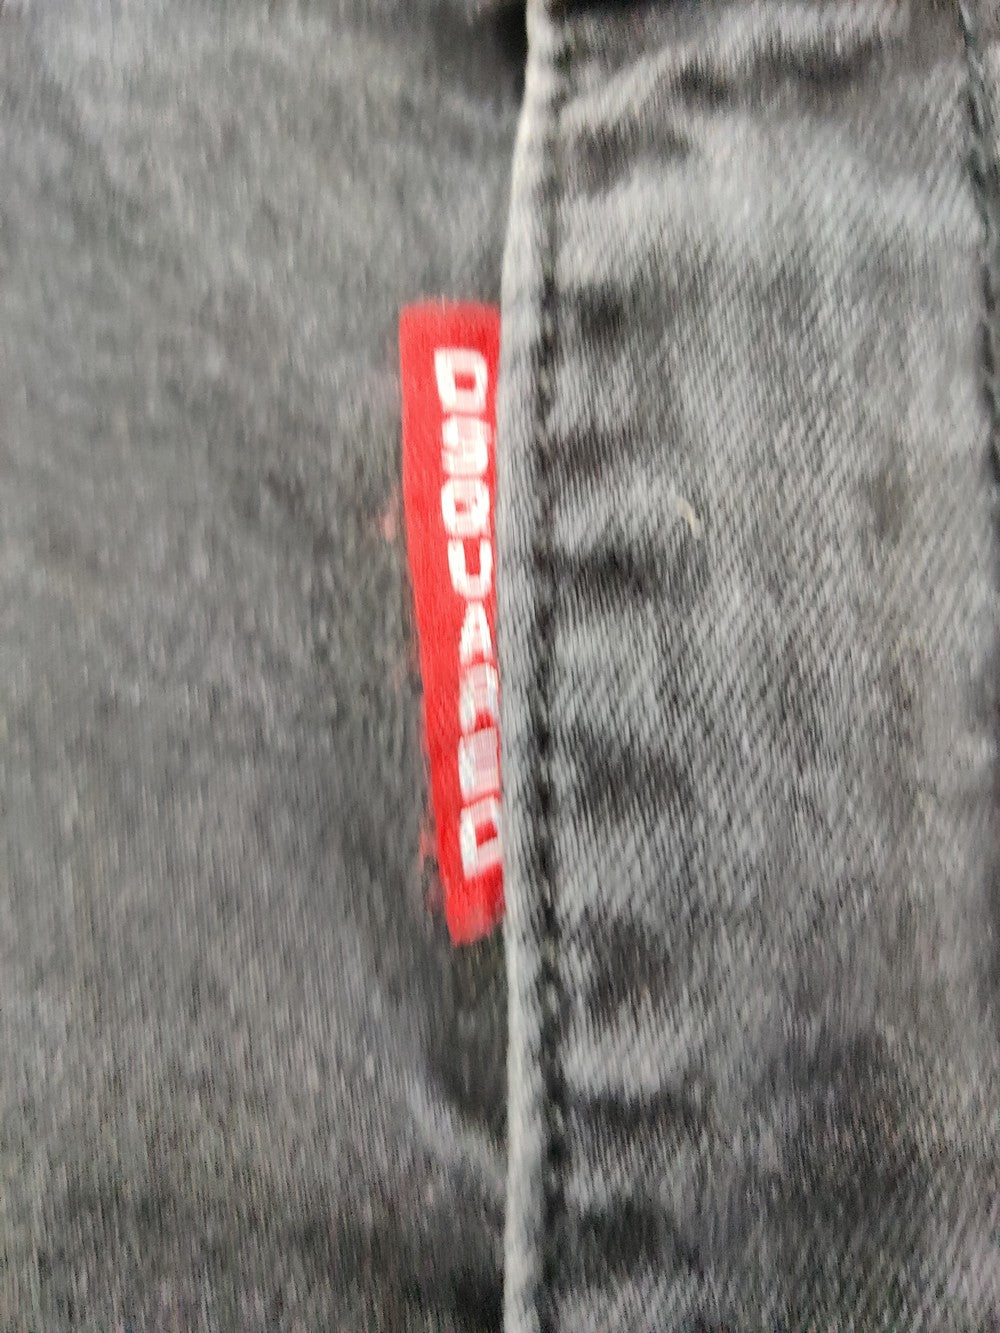 Dsquared 2 Branded Original Denim Jeans For Men